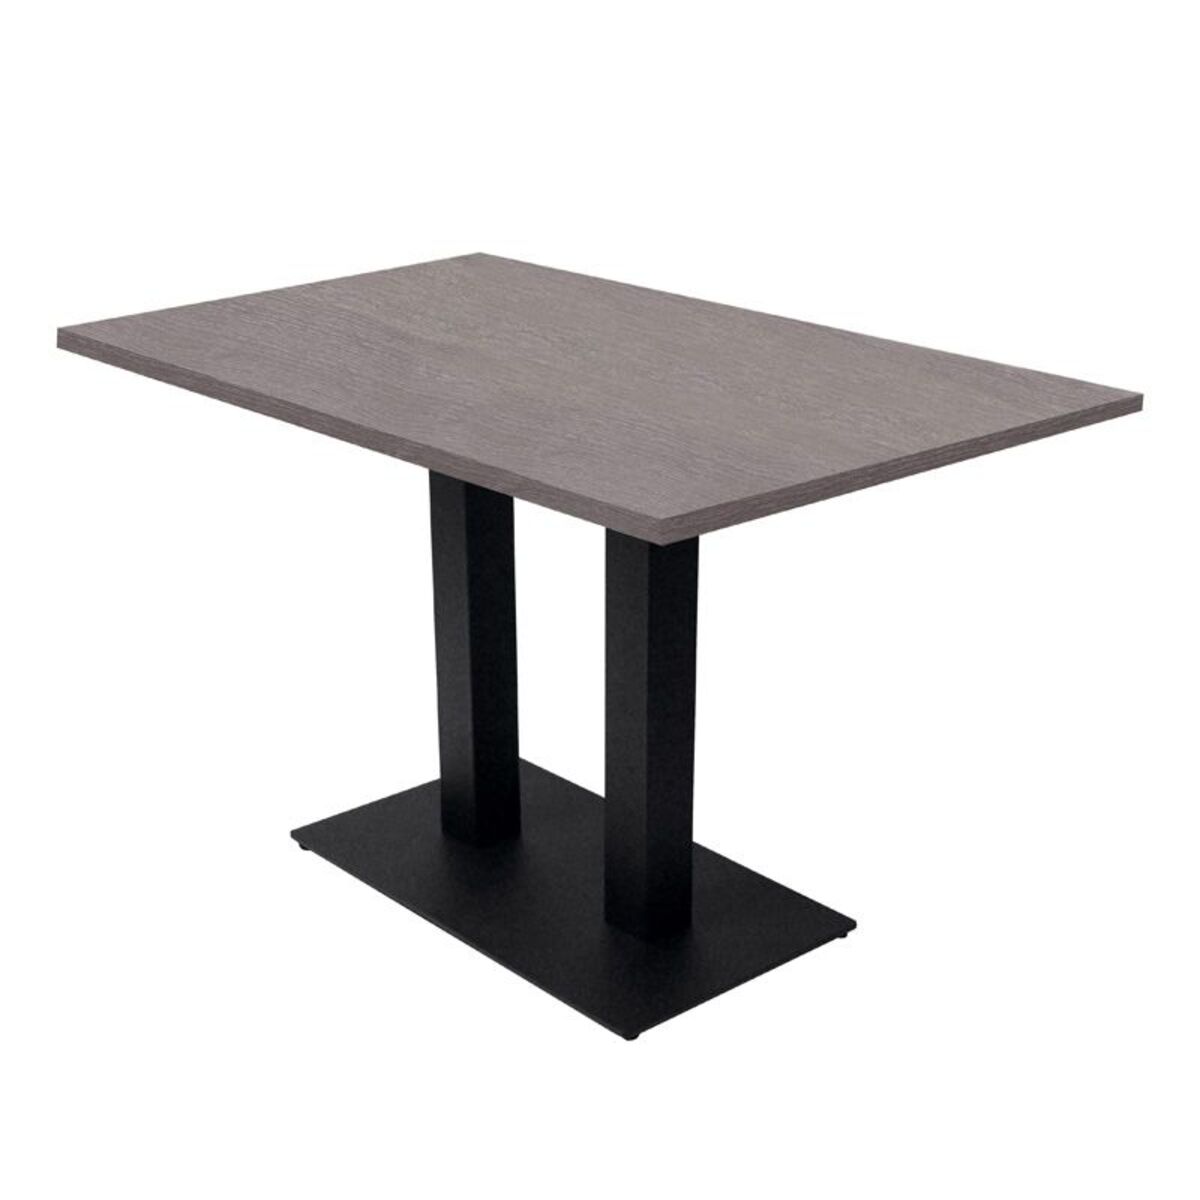 Table intérieure pied double noir & plateau tavola grisé 110 x70 cm